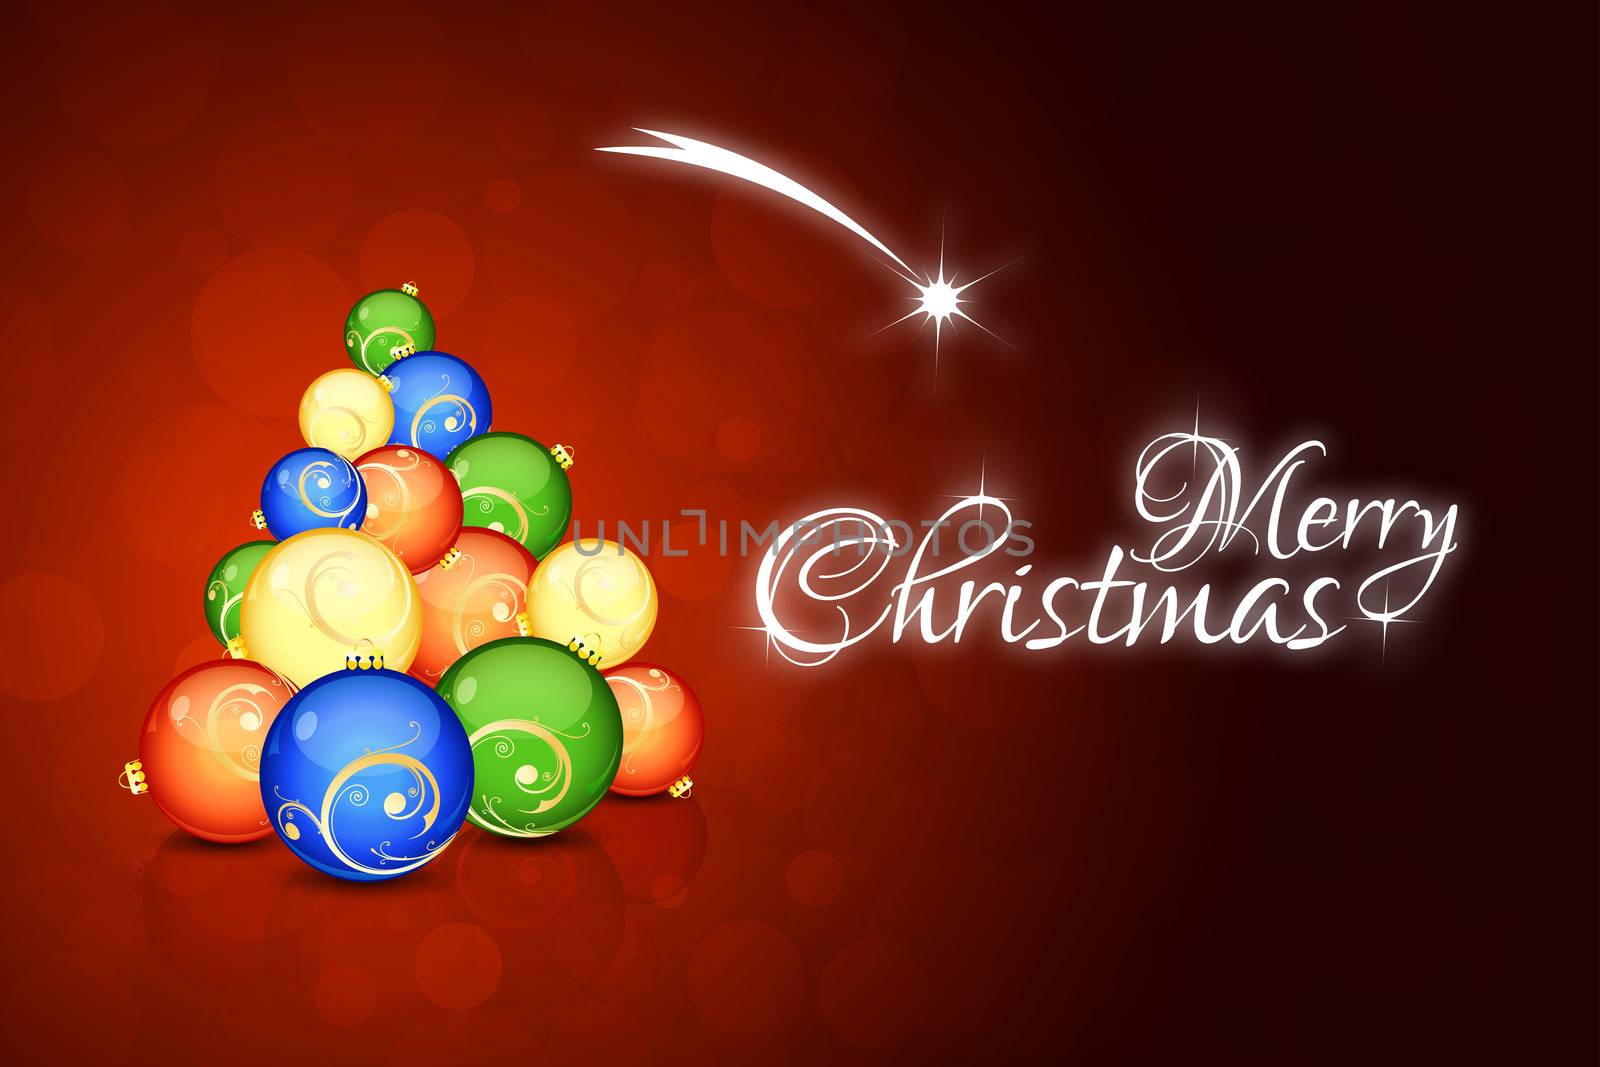 Christmas Card with abstract Christmas Tree